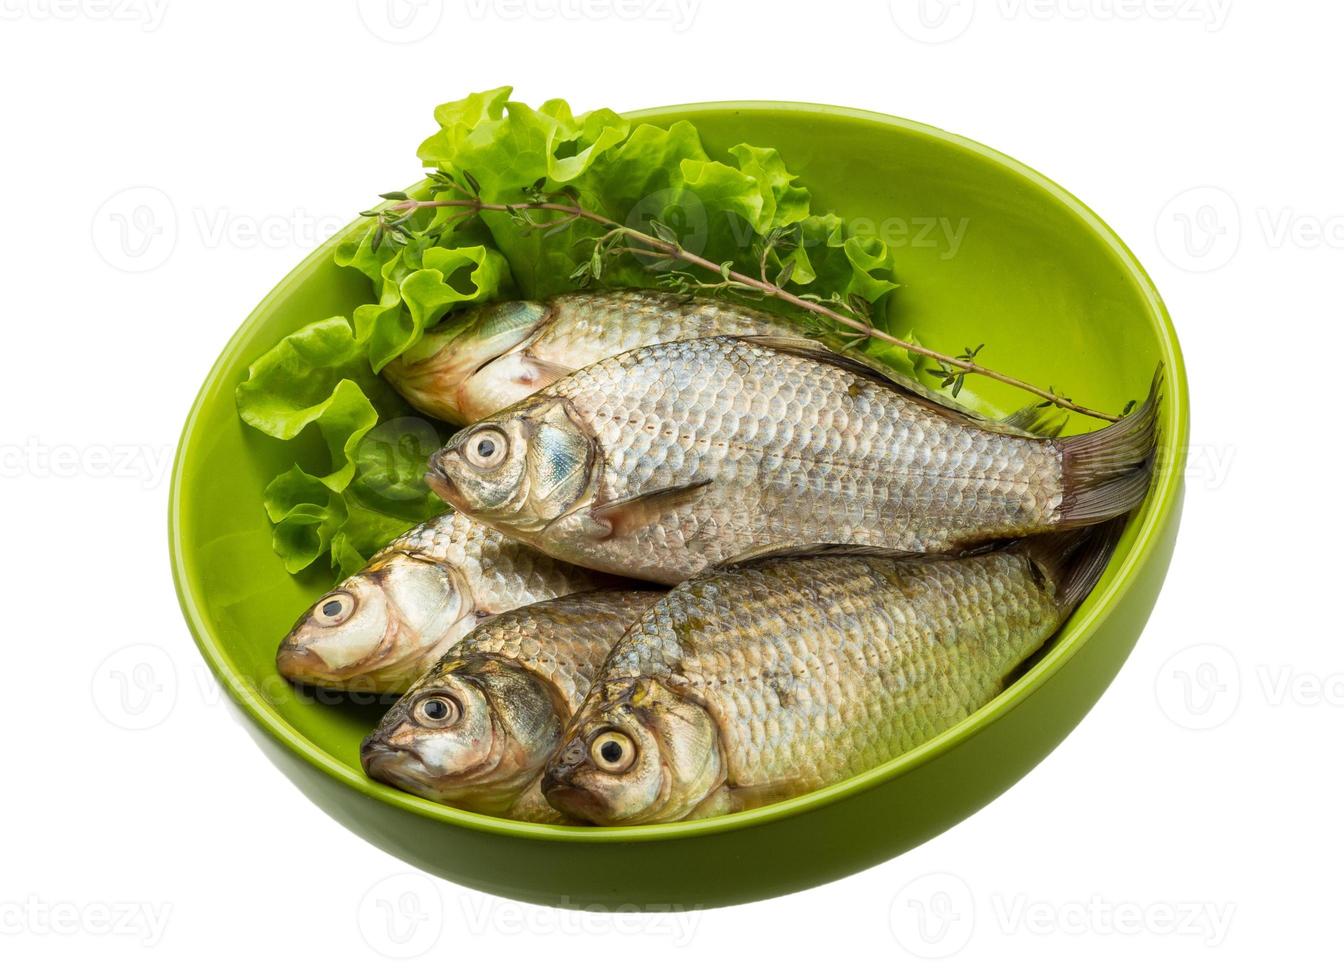 Crucian fish isolated on white background photo